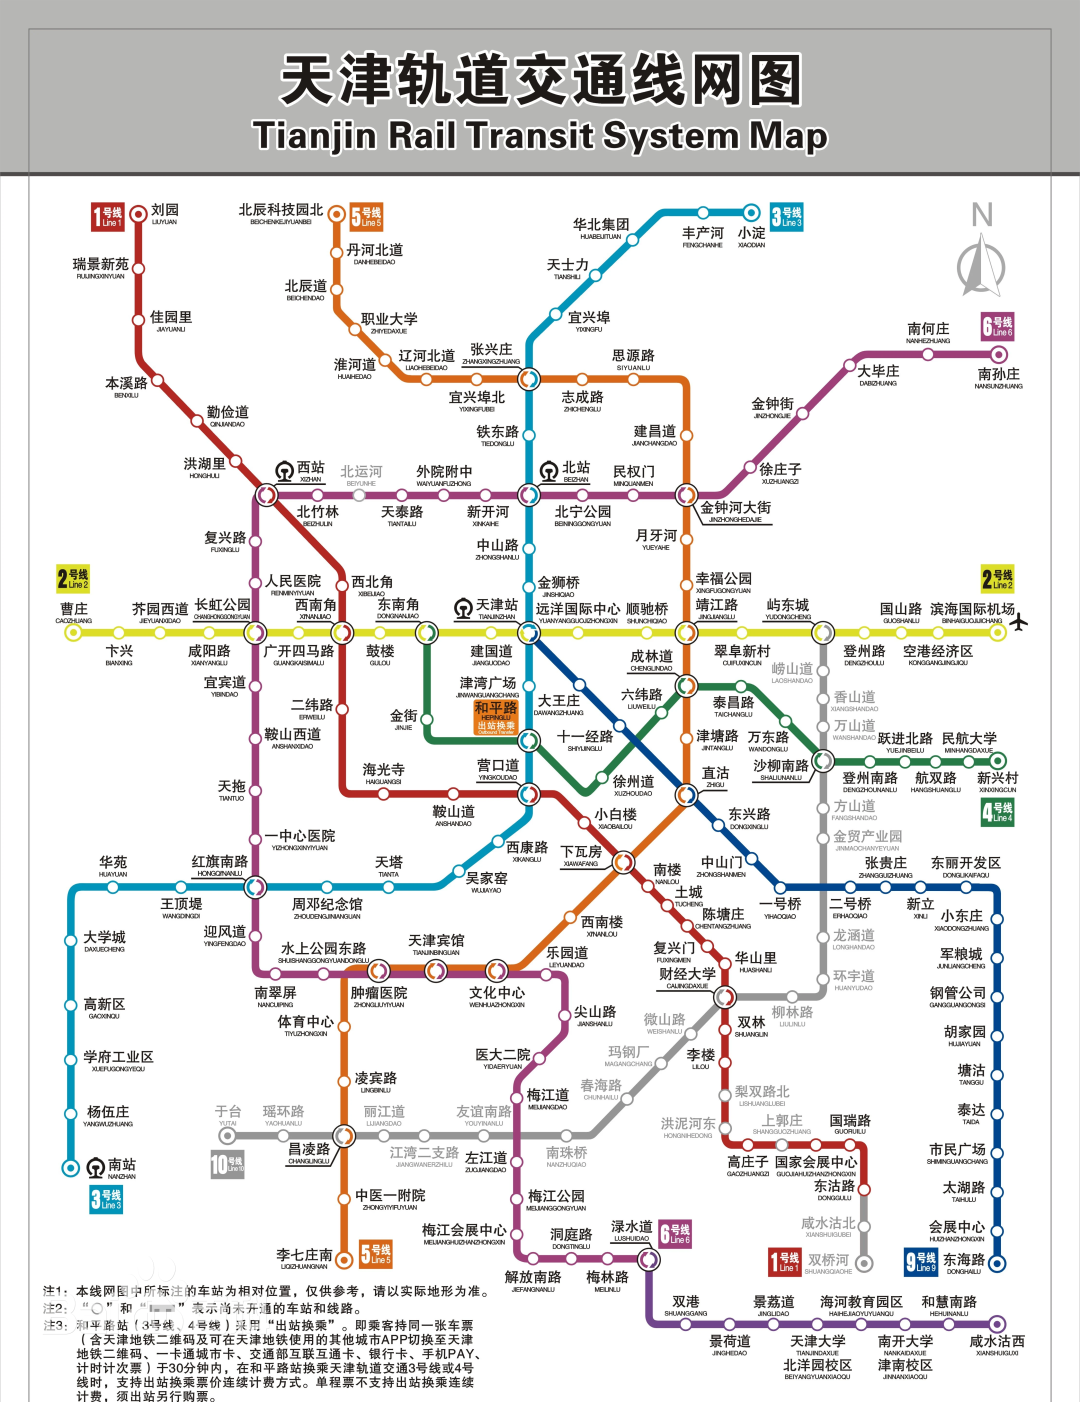 截至2021年12月28日,天津轨道交通开通运营线路地铁线路共有8条,天津